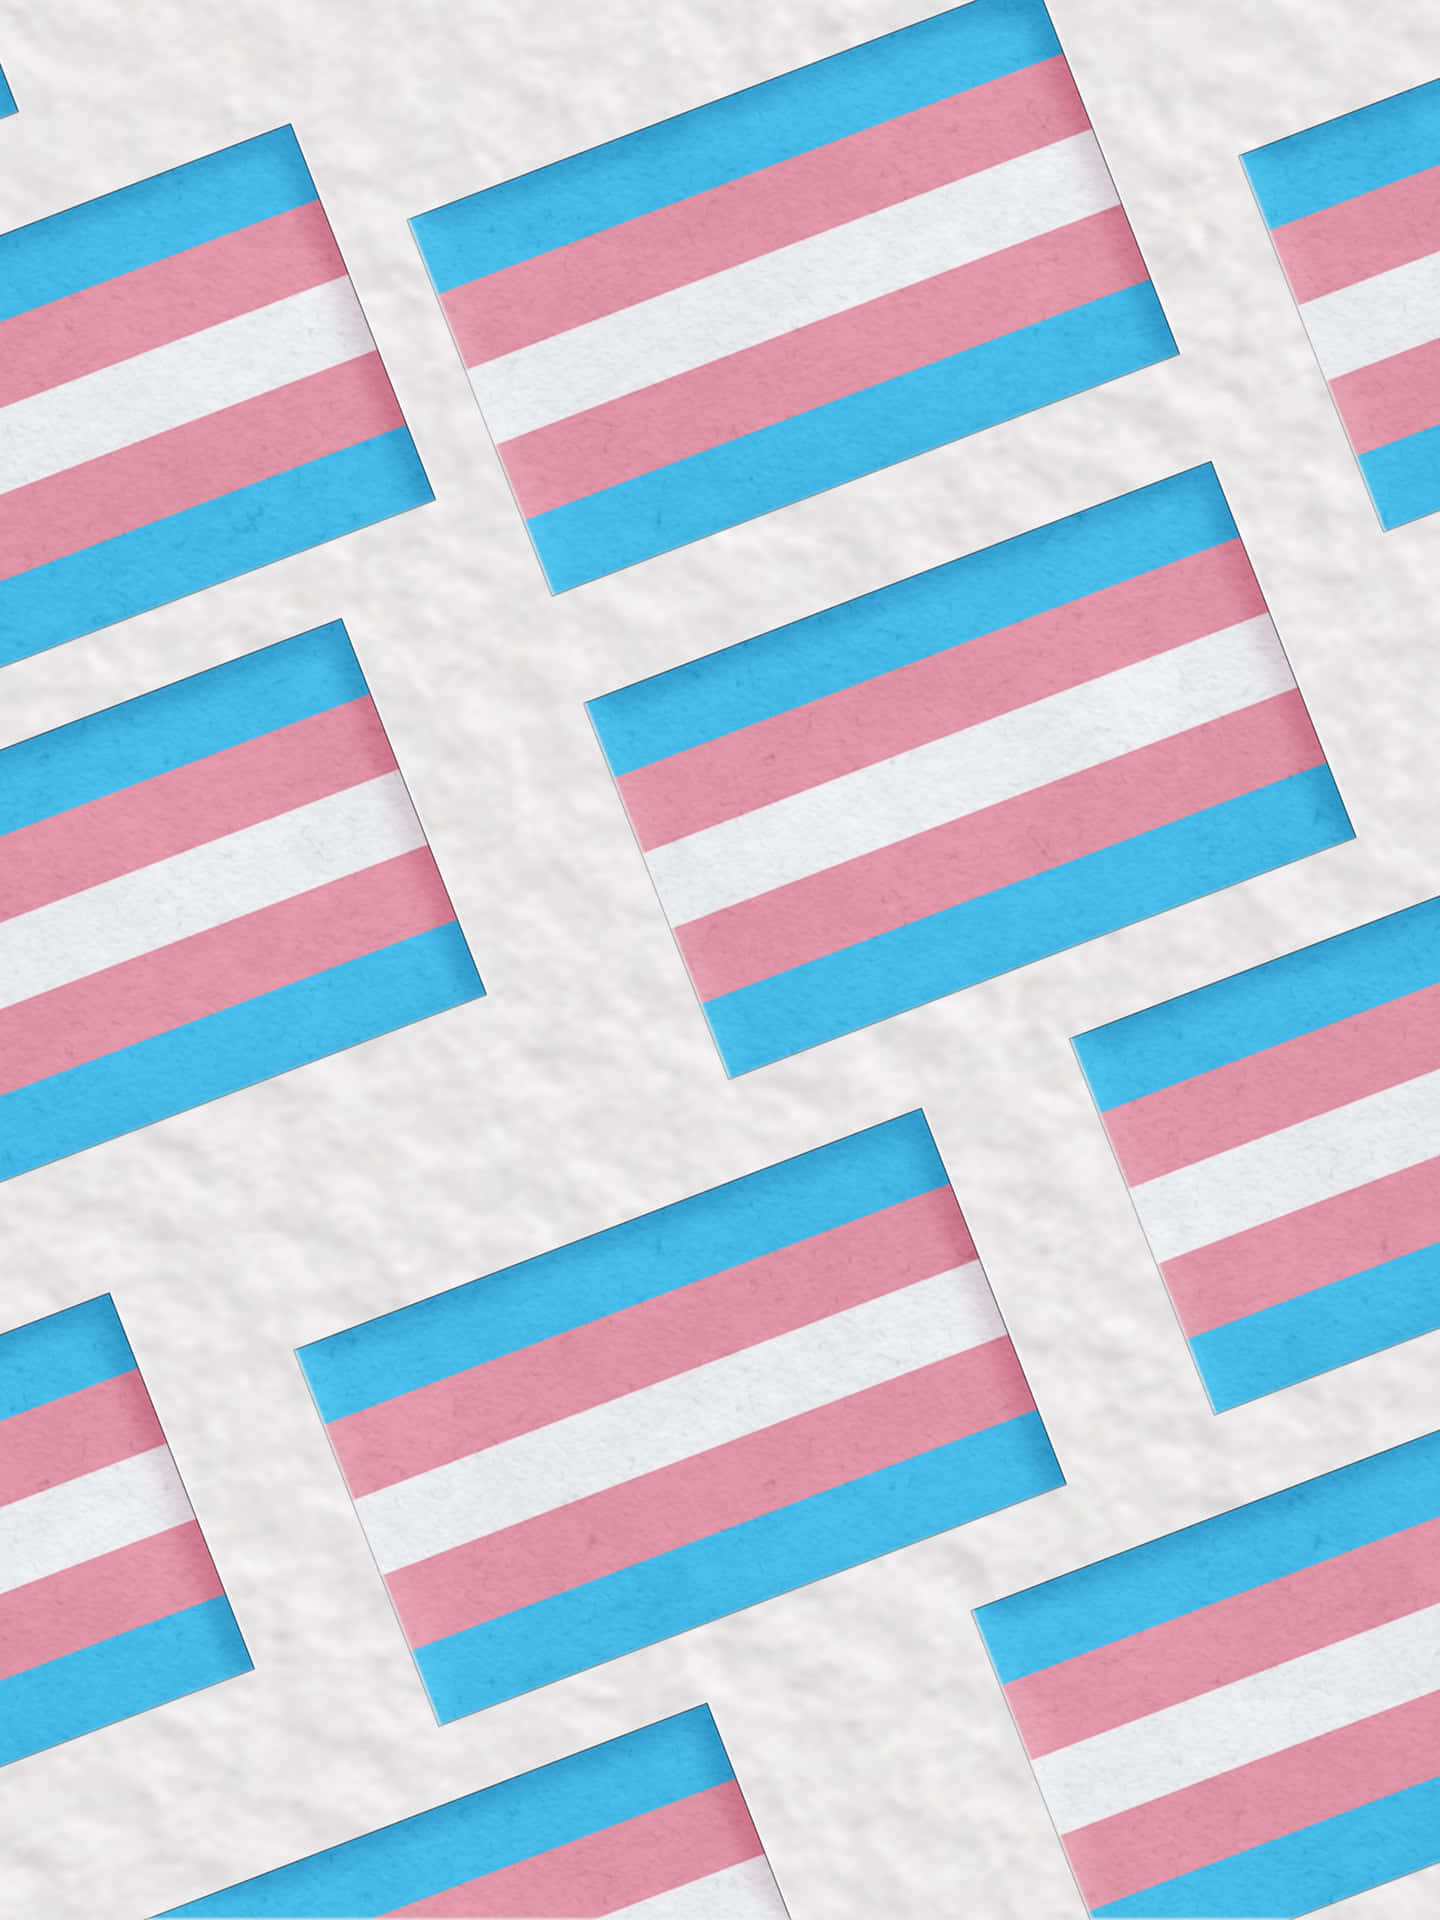 Muestratu Orgullo Y Apoyo A La Comunidad Transgénero Con La Bandera Trans. Fondo de pantalla